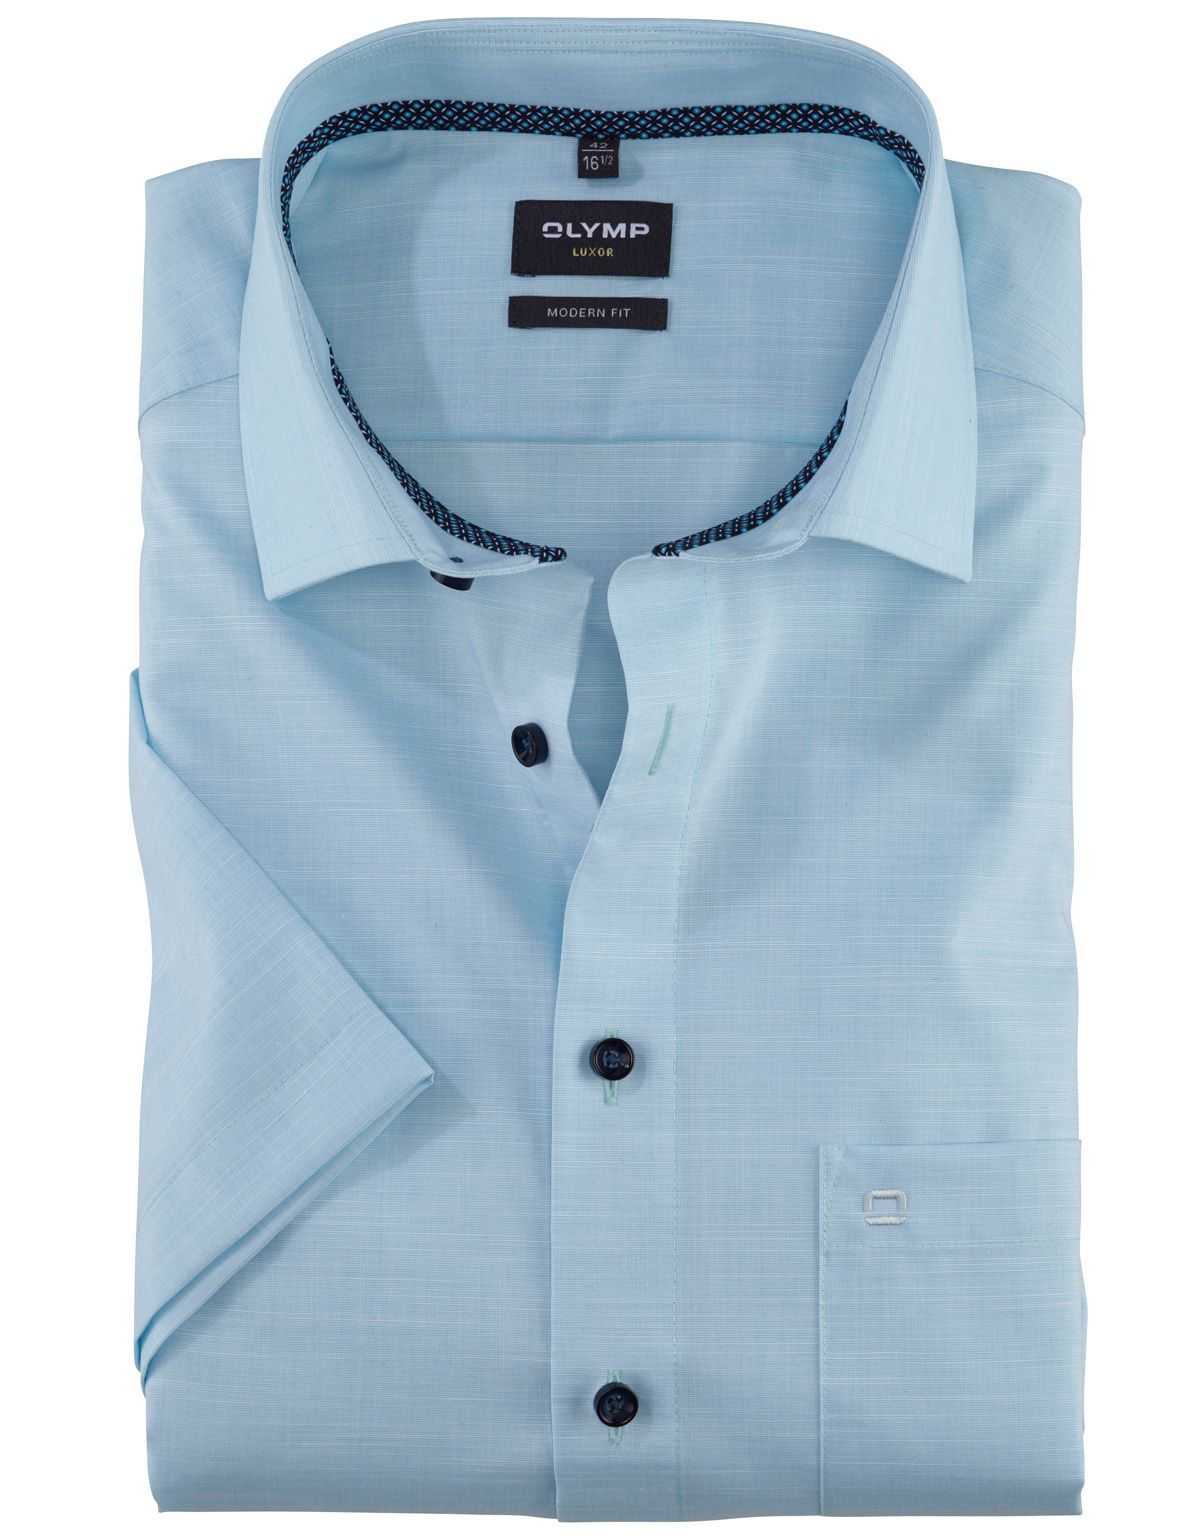 Рубашка классическая мужская OLYMP Luxor, modern fit[Бирюзовый]